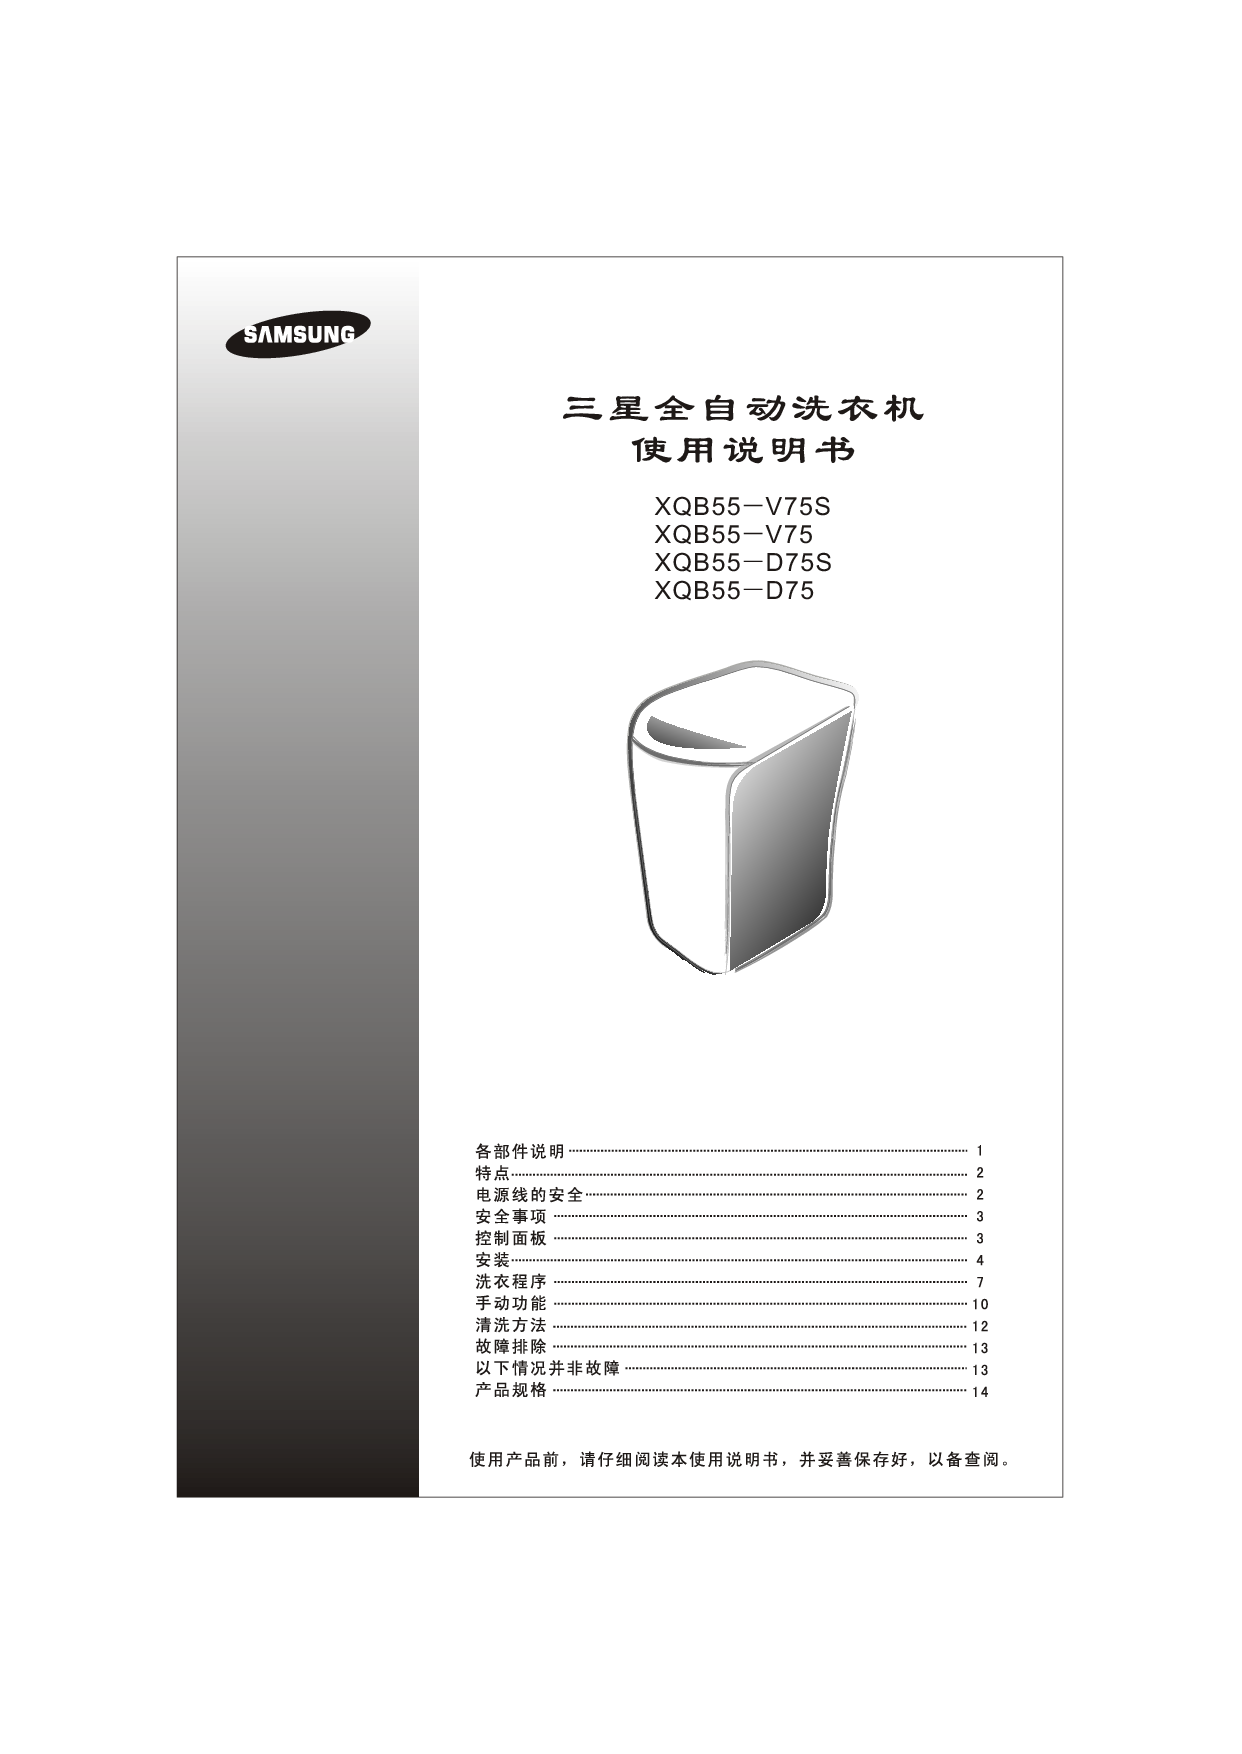 三星 Samsung XQB55-D75 使用说明书 封面